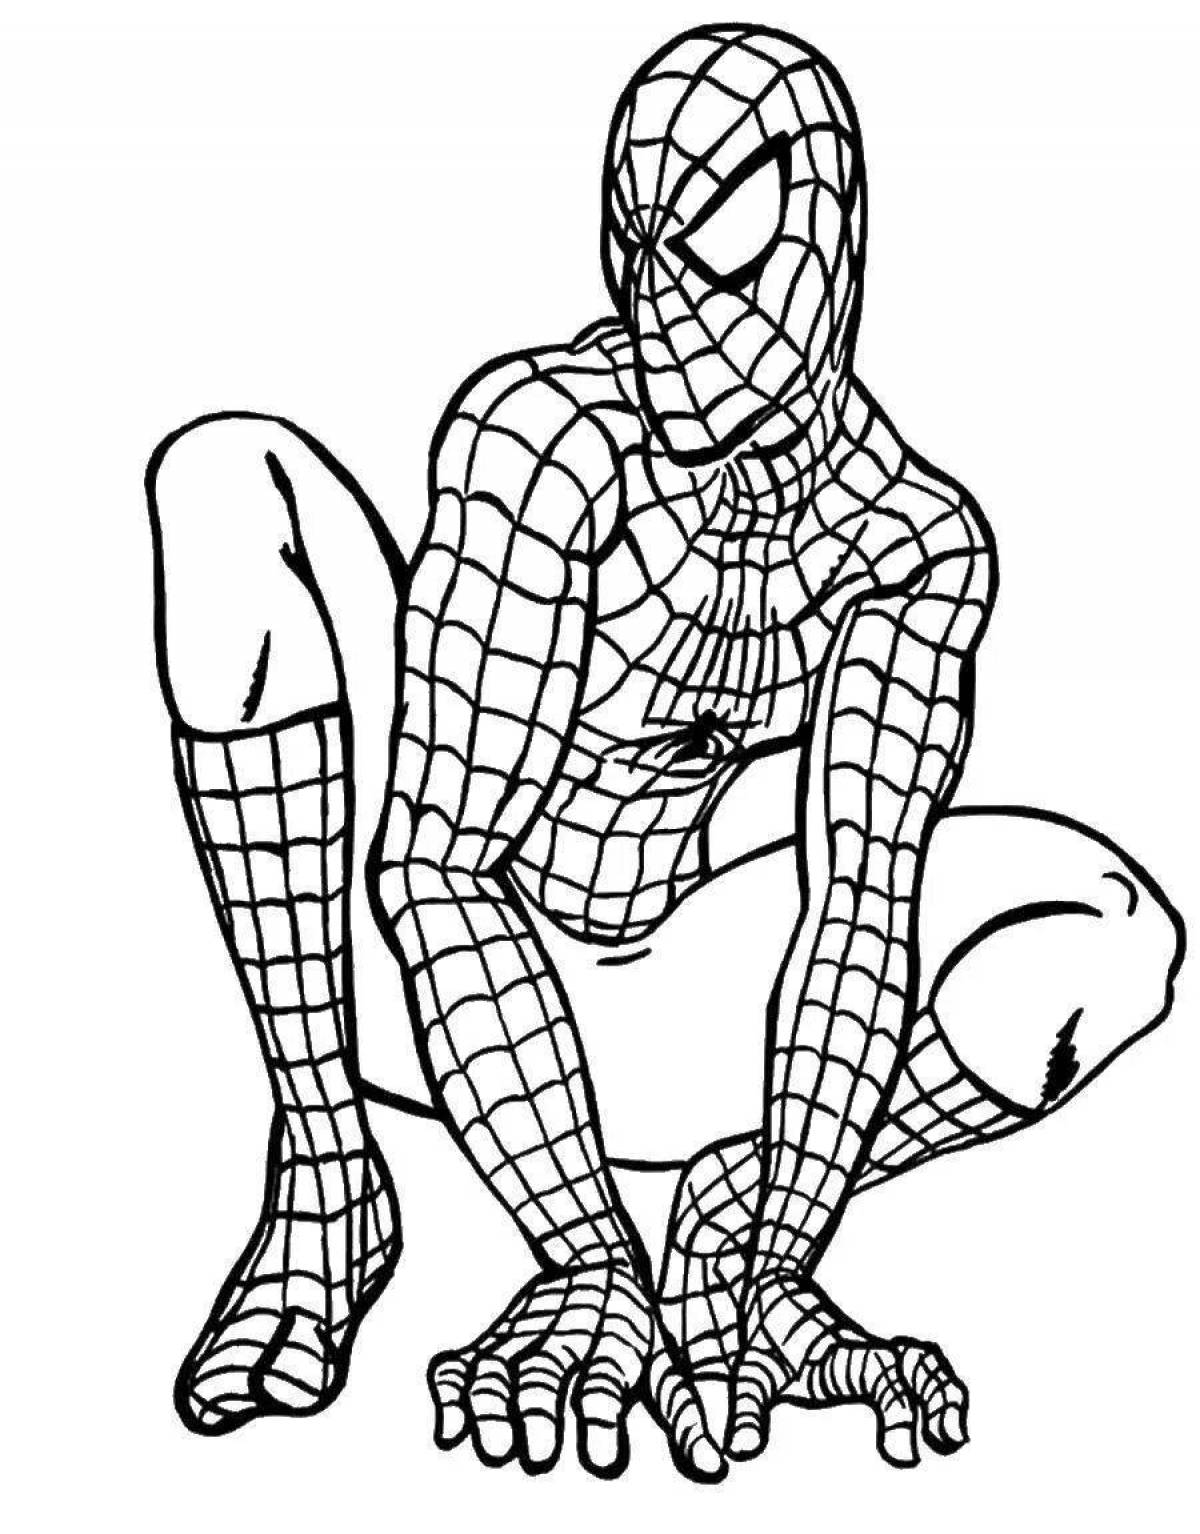 Привлекательный рисунок человека-паука